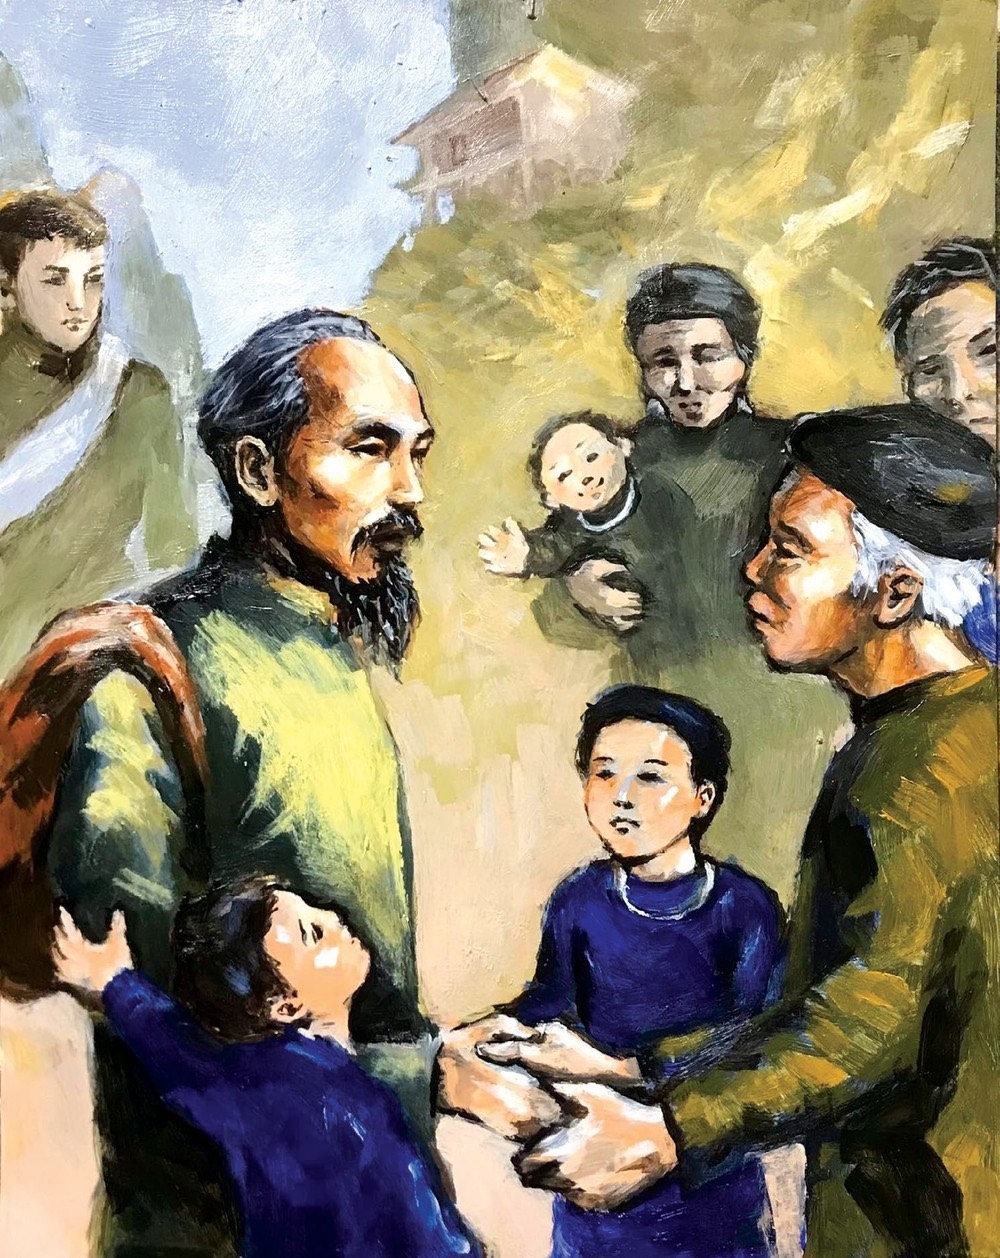 Tình cảm của Chủ tịch Hồ Chí Minh với đồng bào các dân tộc Việt Bắc trong thời gian Người hoạt động ở một số tỉnh miền núi phía Bắc.